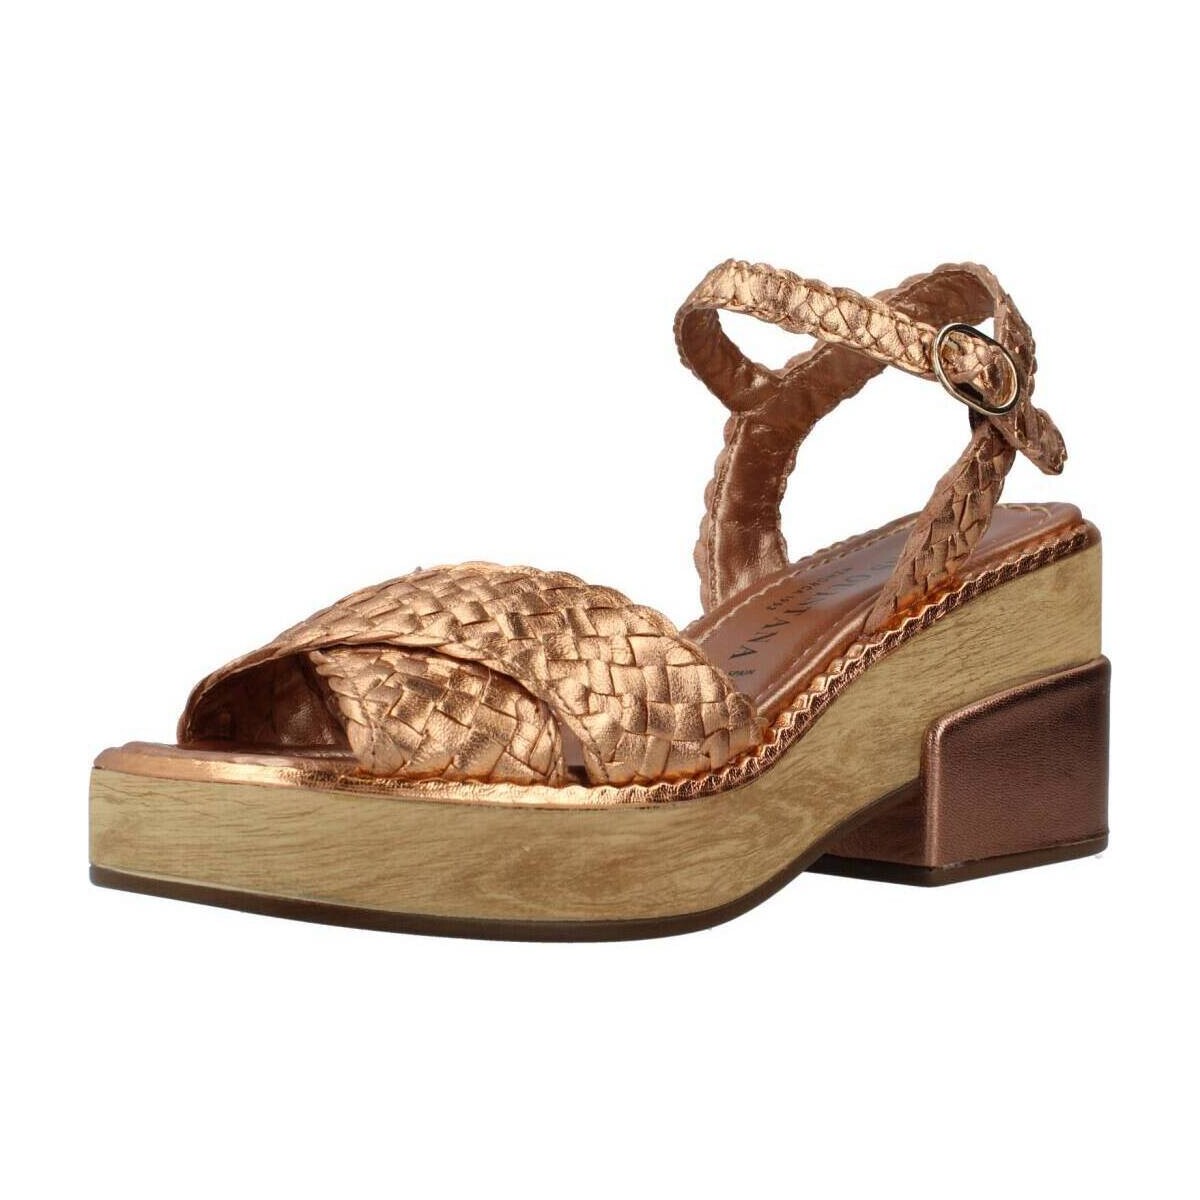 Chaussures Femme Sandales et Nu-pieds Pon´s Quintana PARIS Marron